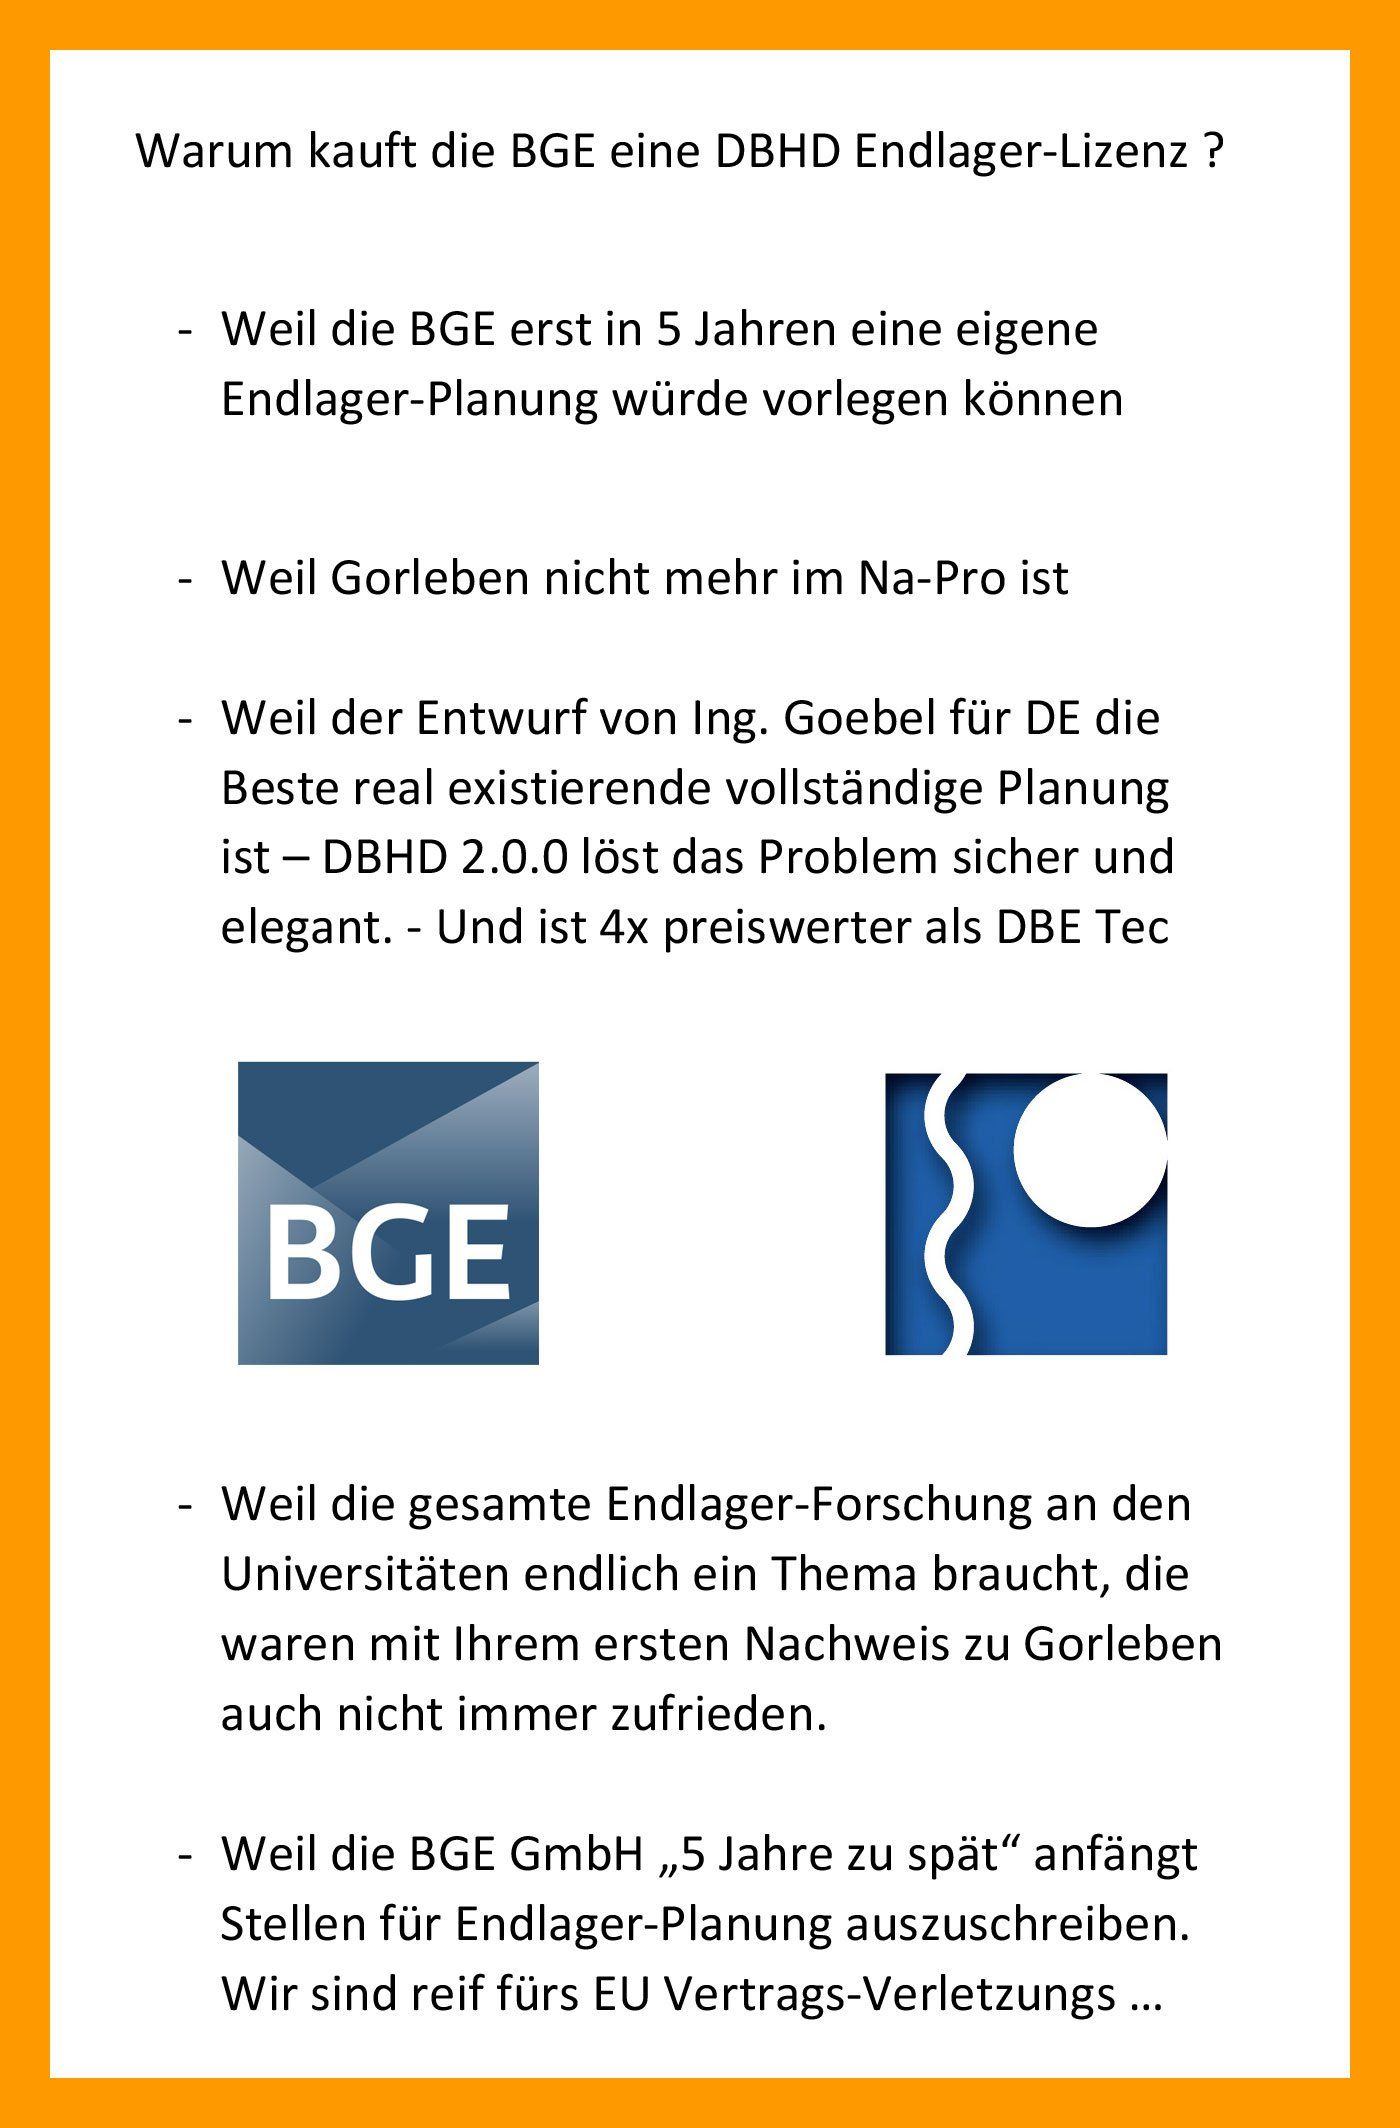 Warum die BGE GmbH eine DBHD 2.0.0 Endlager-Lizenz kauft